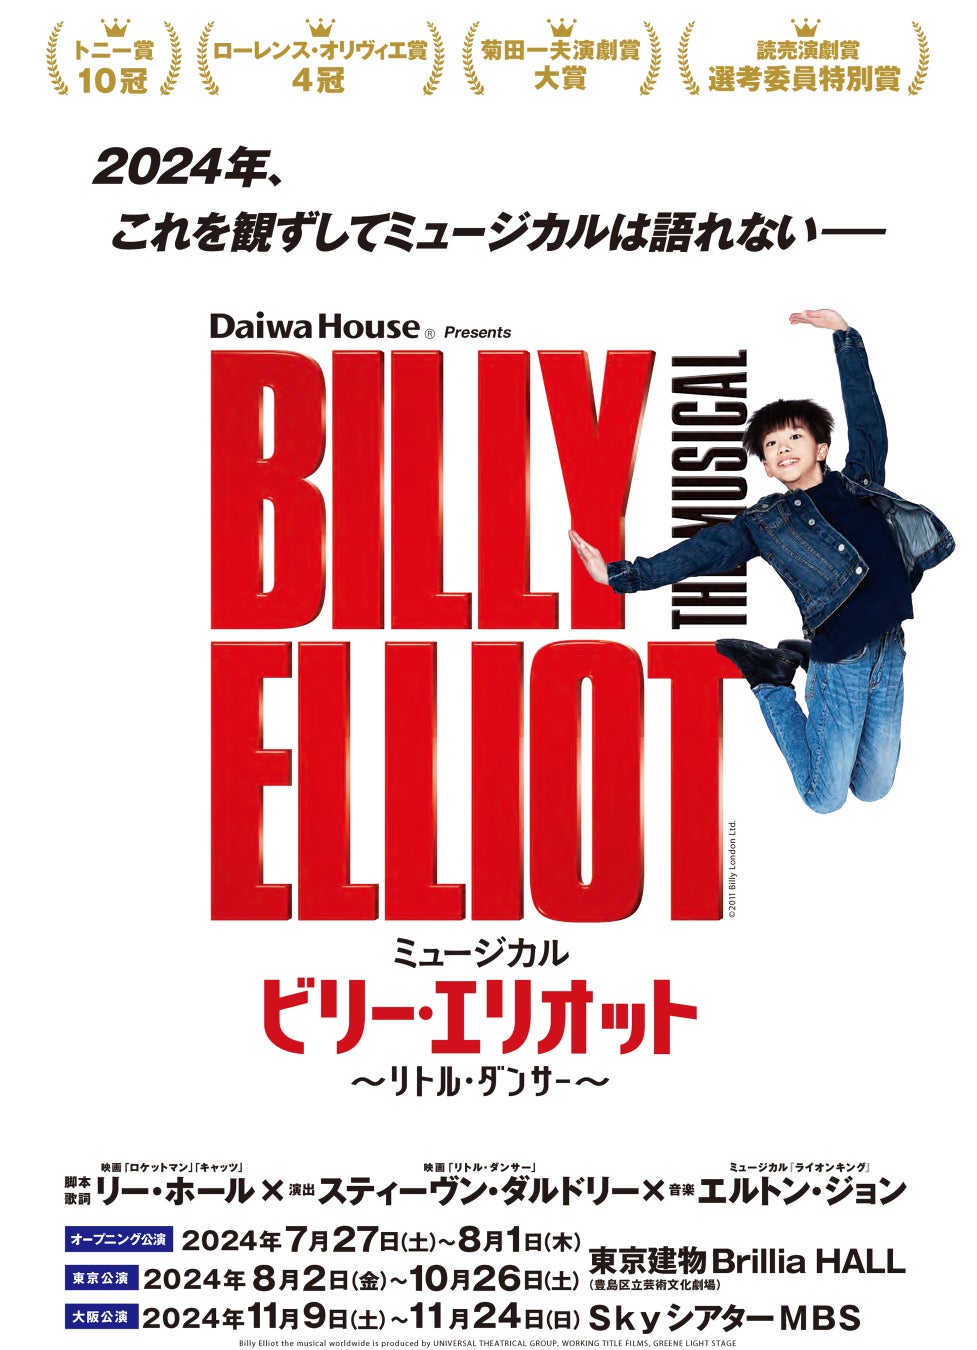 【写真・コメント】ミュージカル『ビリー・エリオット〜リトル・ダンサー〜』製作発表レポート